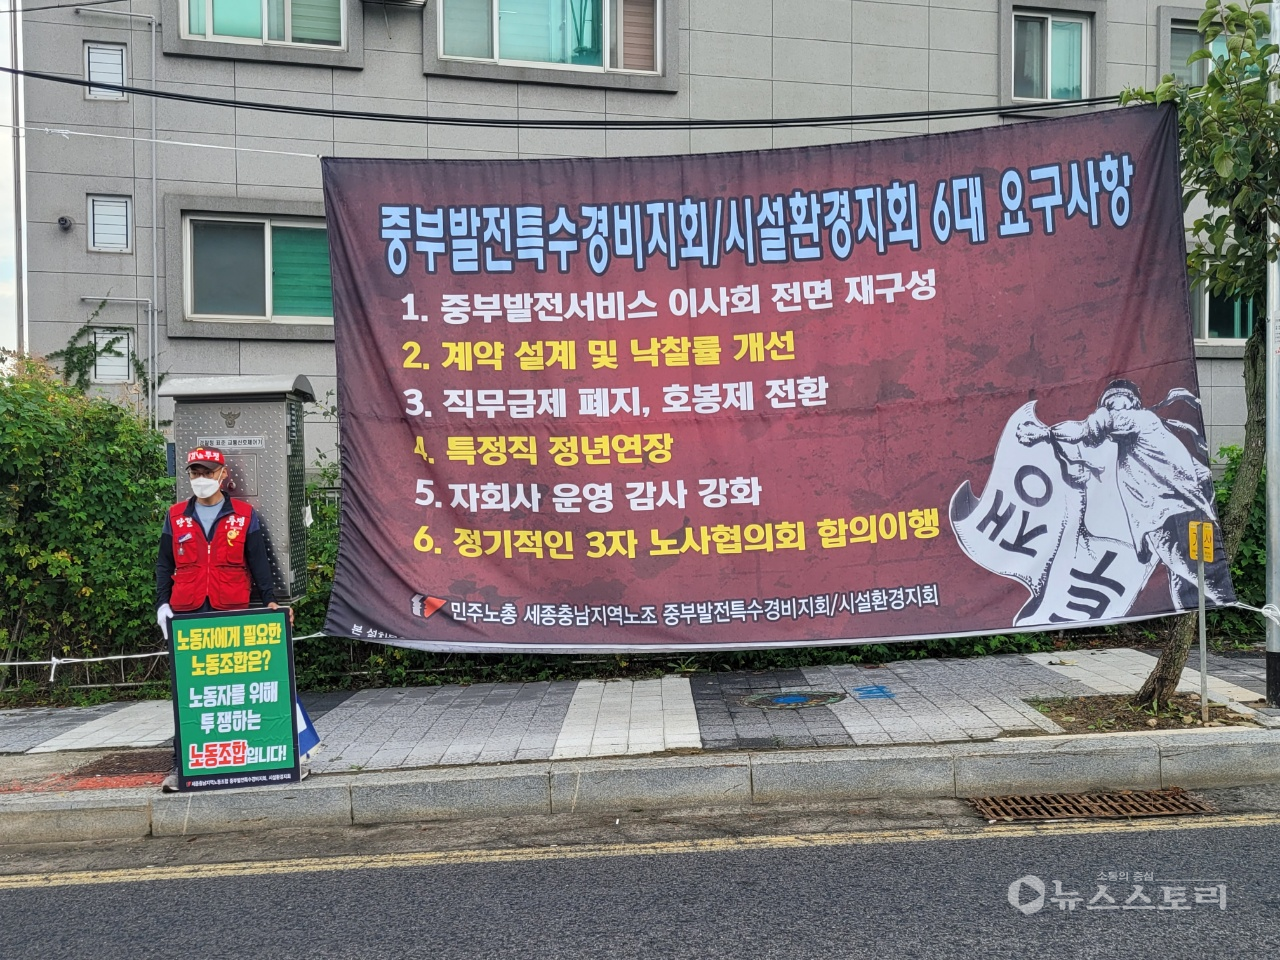 세종충남지역노조는 한국중부발전 정규직전환 관련 6대 요구사항을 담은 대형현수막을 8일 게재했다.